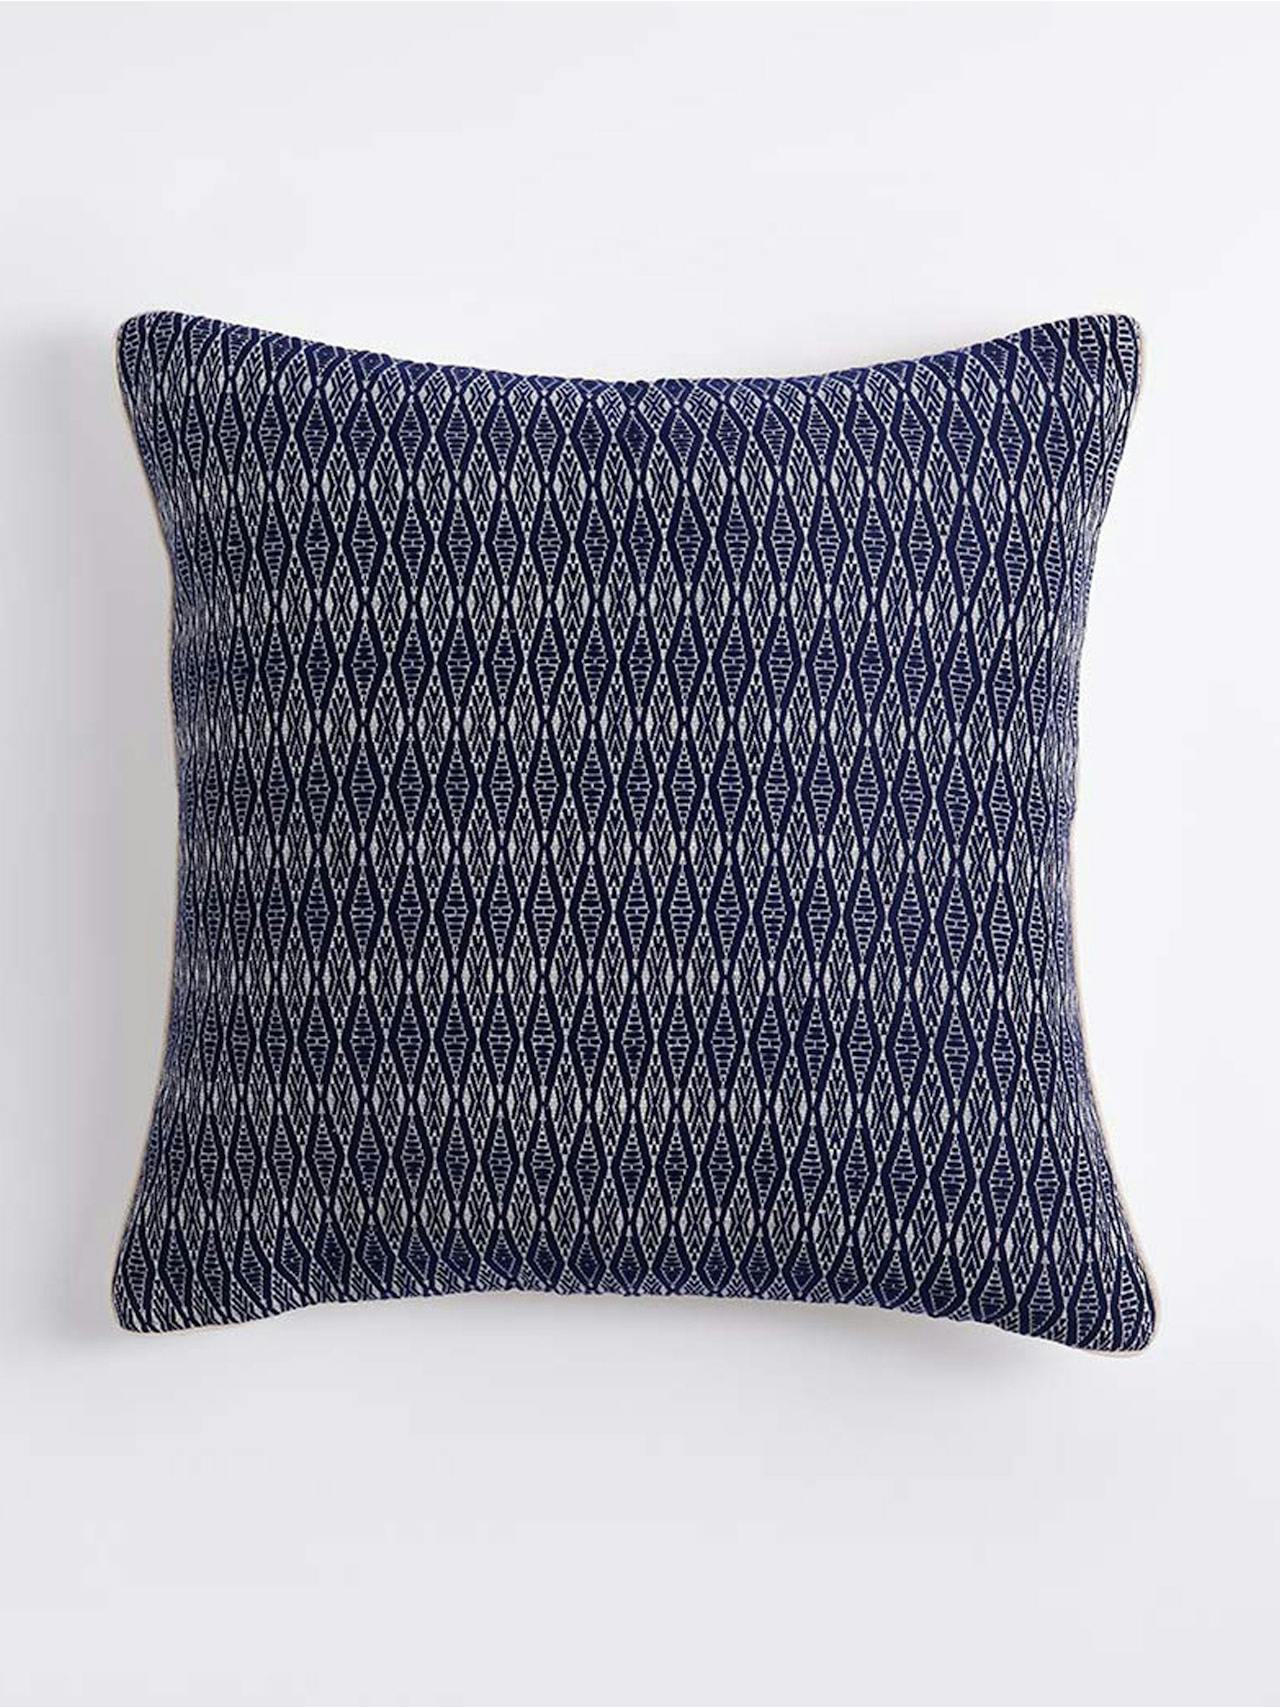 Katha geometric blue throw cushion